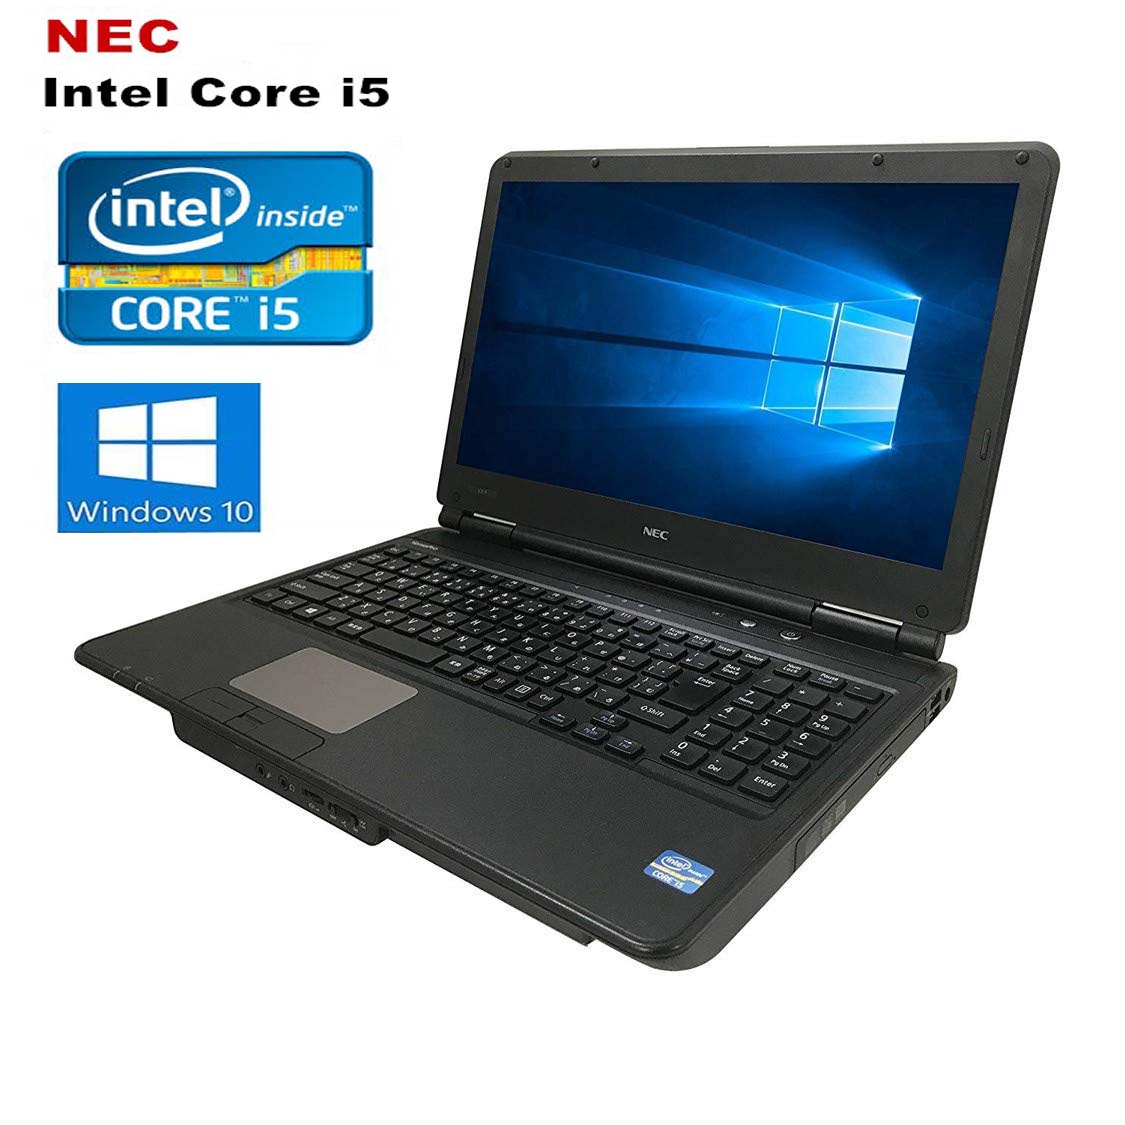 【楽天市場】ポイン最大43.5倍! NEC中古パソコン Windows10 Corei5 新品爆速SSD240GB 店長おまかせNECノート